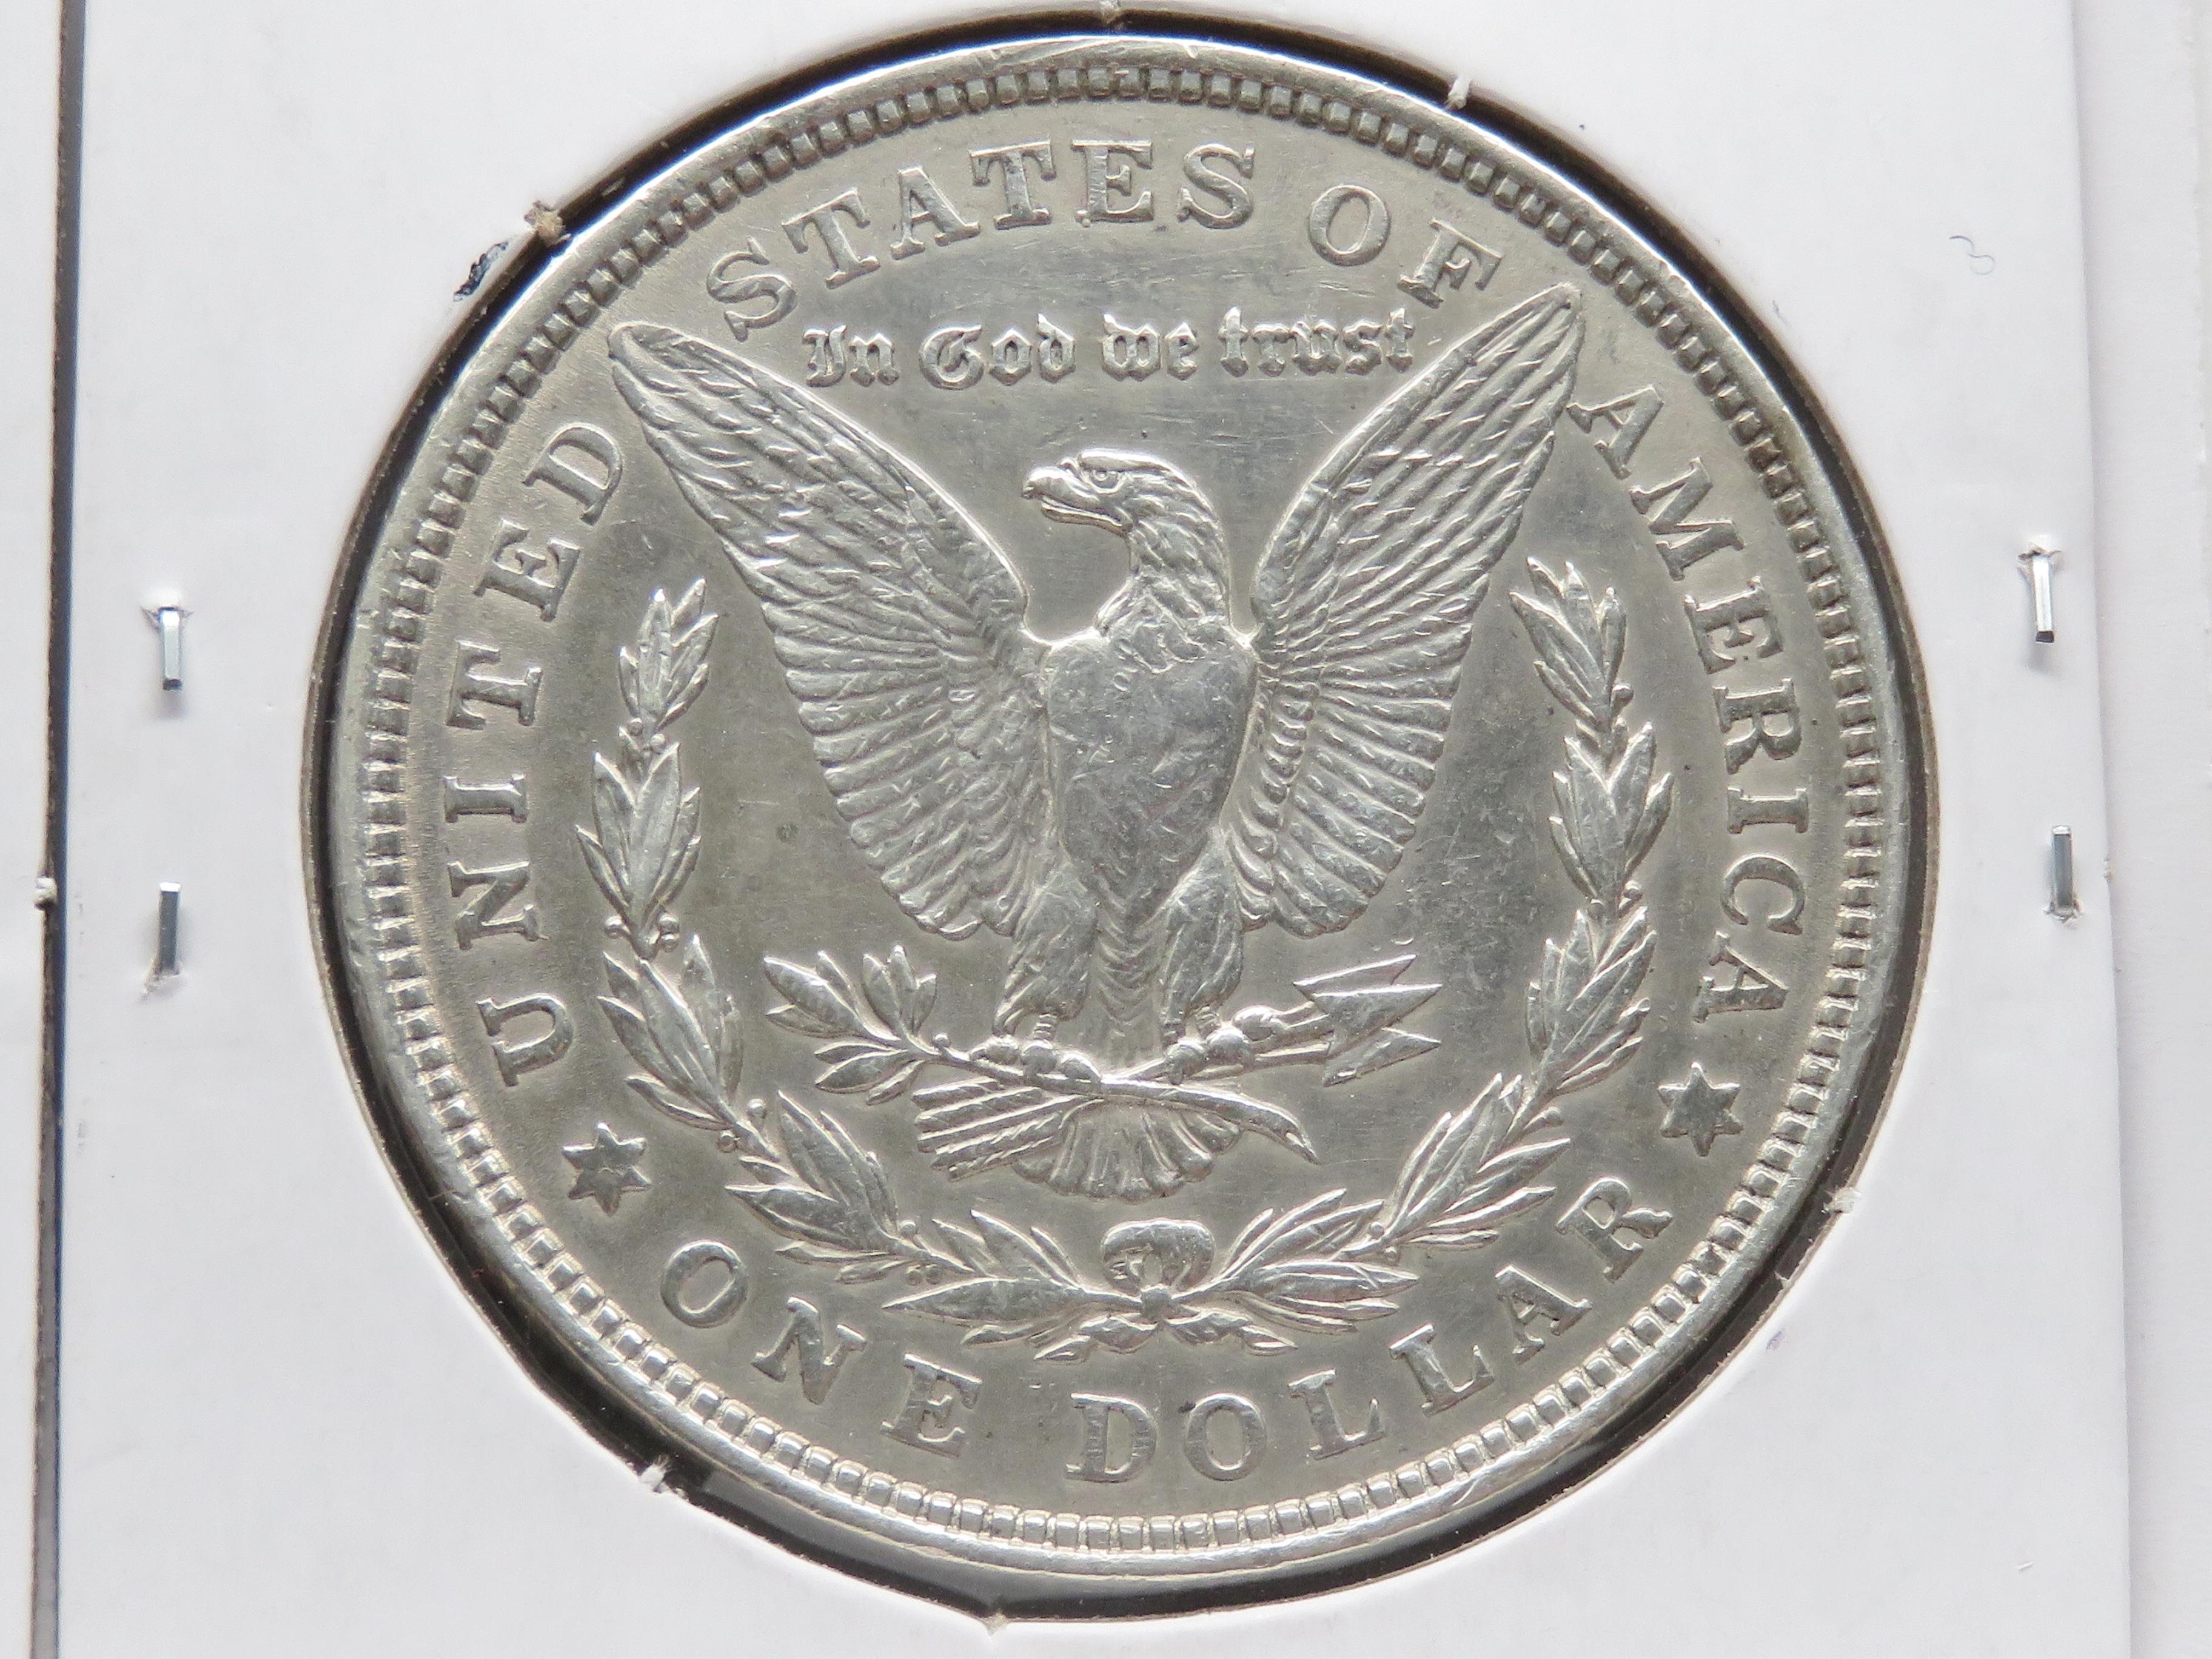 2 Morgan $ EF cleaned: 1904, 1921